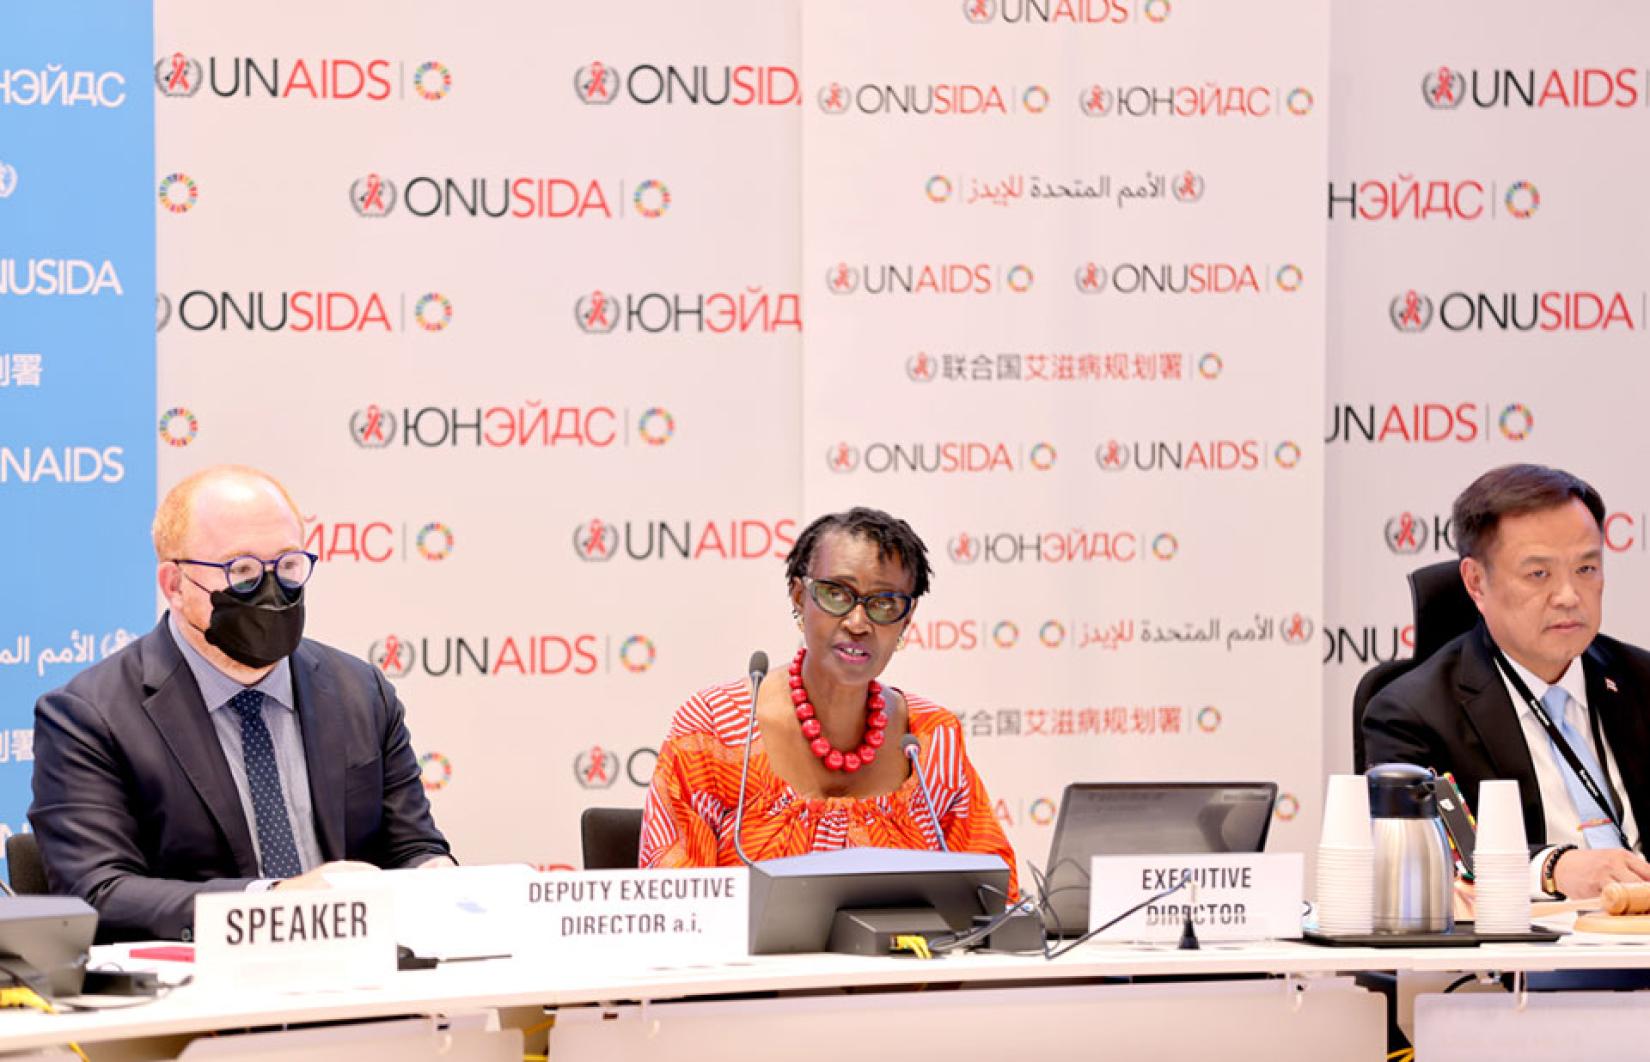 Reunião da Junta de Coordenação do UNAIDS terminou com decisões significativas para fortalecer a resposta global ao HIV.